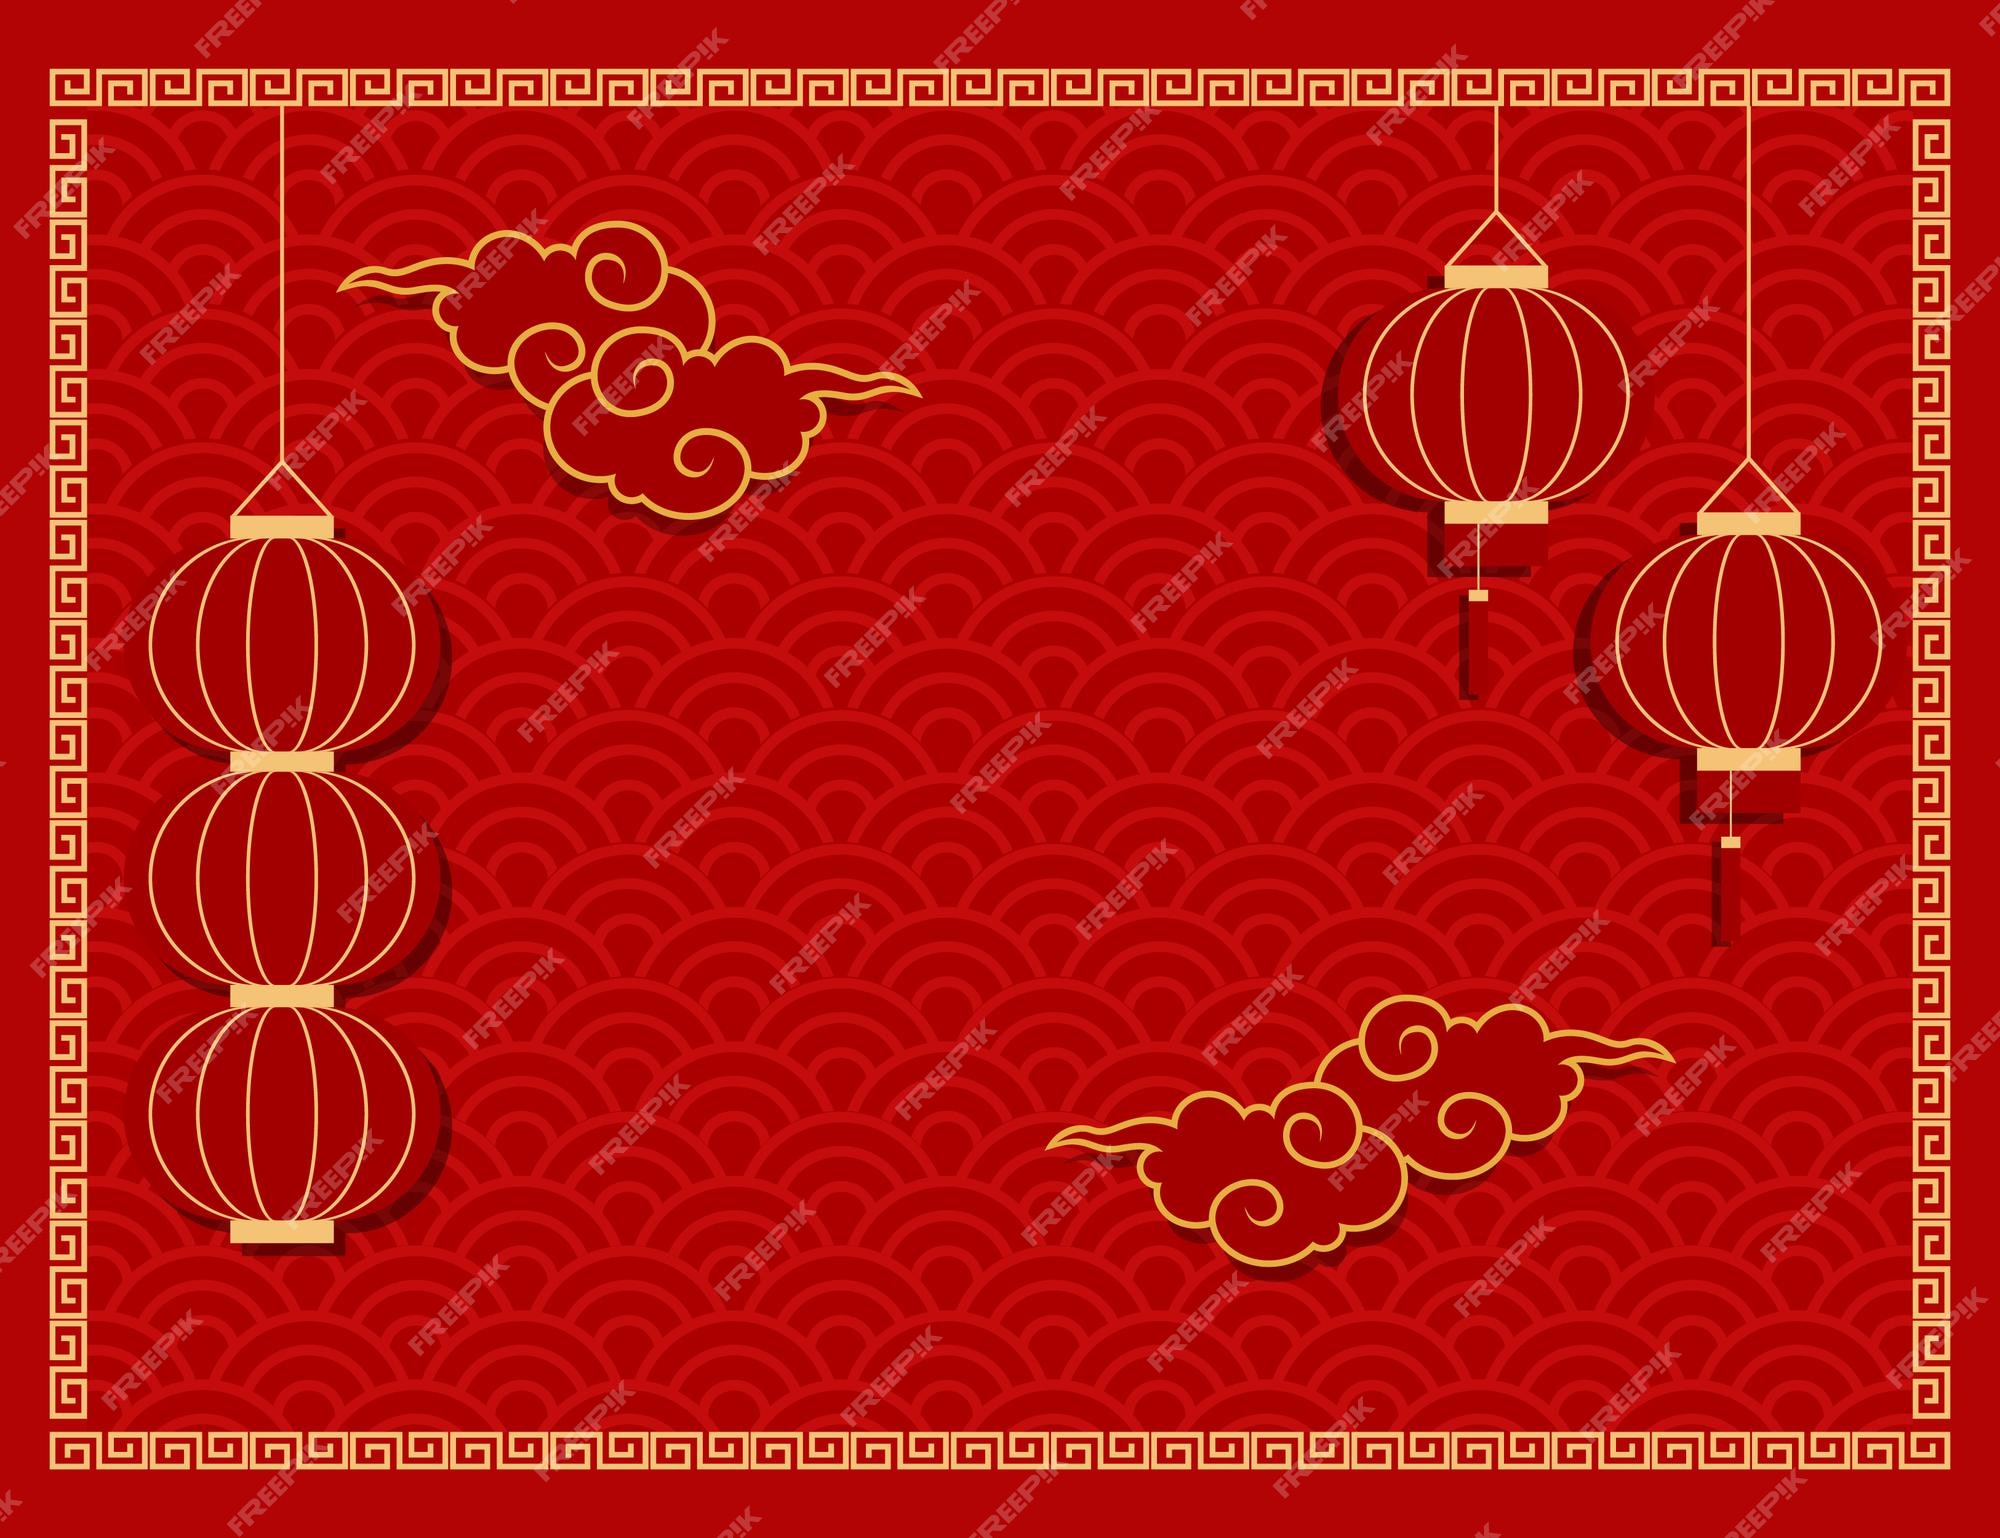 Lanterns chinese: Với các màu sắc tươi sáng và hình ảnh độc đáo, những chiếc đèn lồng Trung Quốc chắc chắn sẽ làm mãn nhãn bạn! Hãy xem những hình ảnh đẹp này và cảm nhận sự độc đáo và sáng tạo của nền văn hóa Trung Hoa.